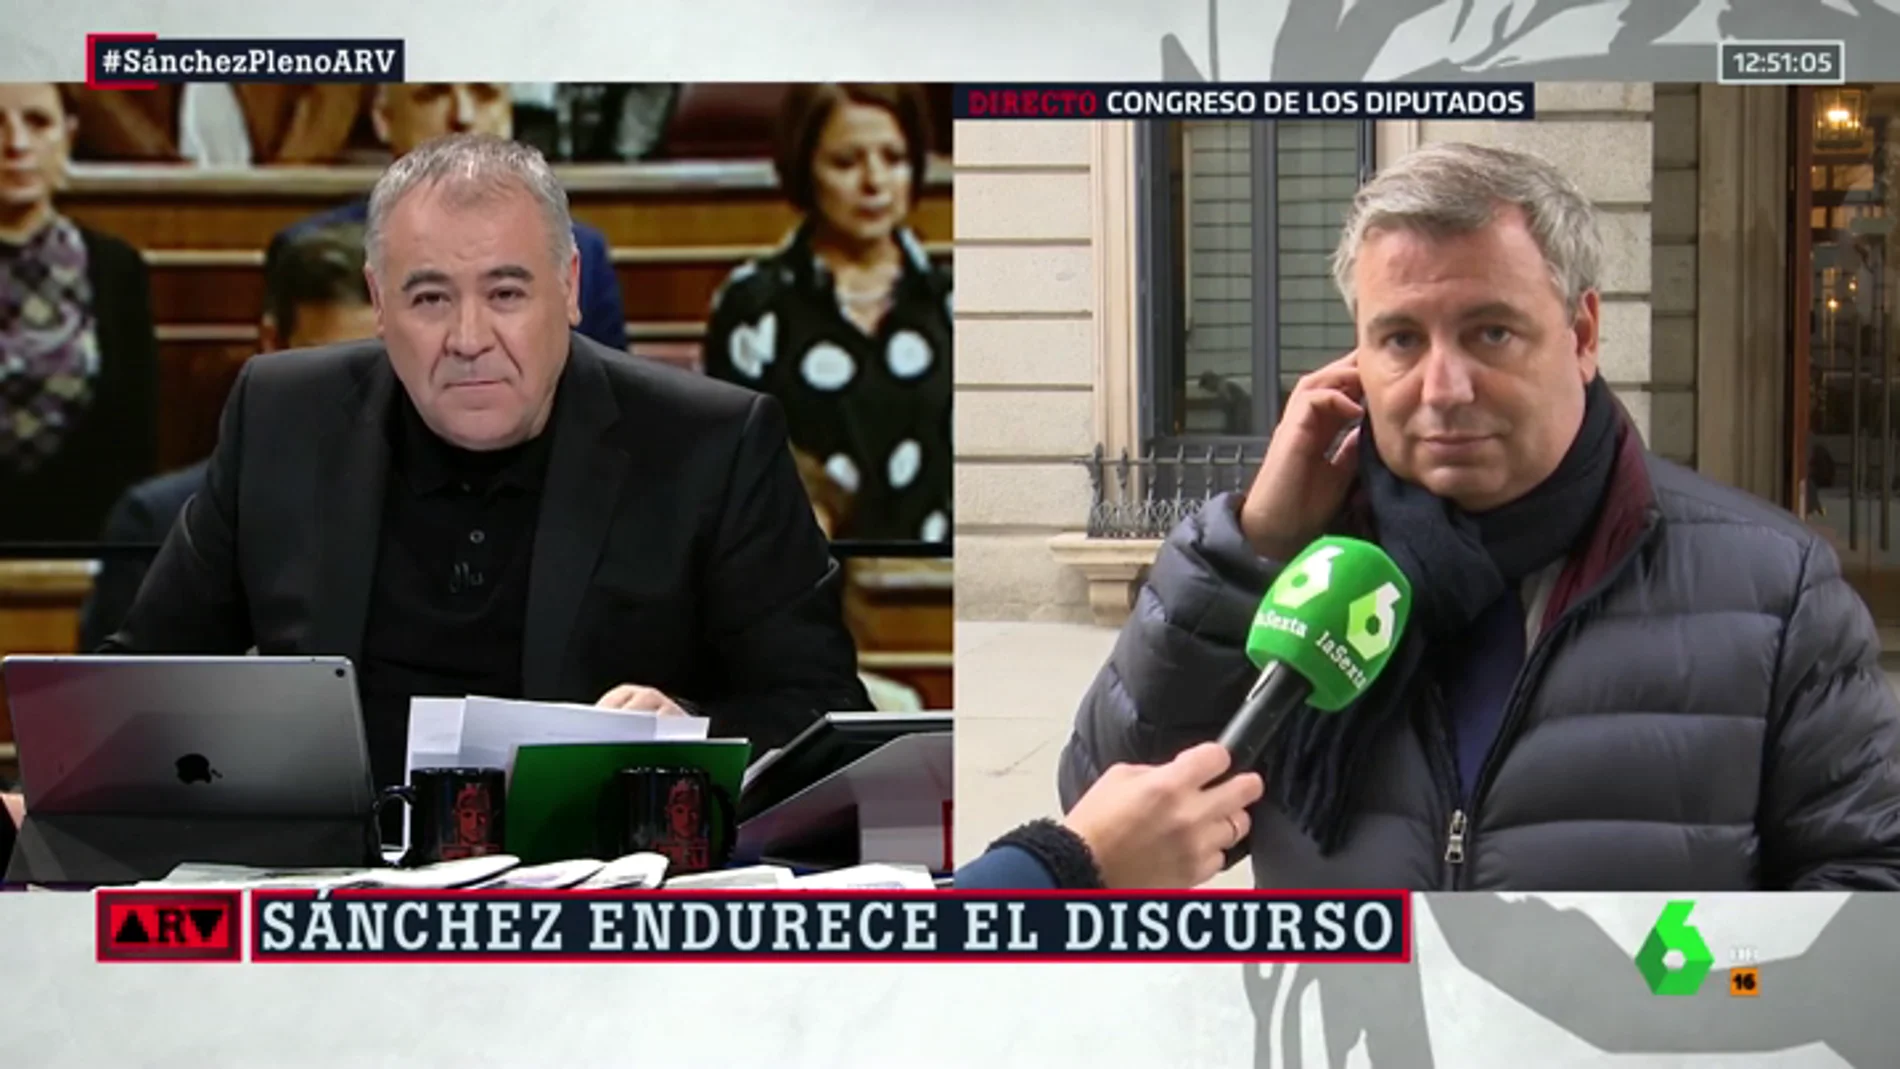 Jordi Xuclà (PDeCAT), tras las actuaciones de los CDR: "Yo apuesto por el diálogo en los parlamentos a cara descubierta y con argumentos"